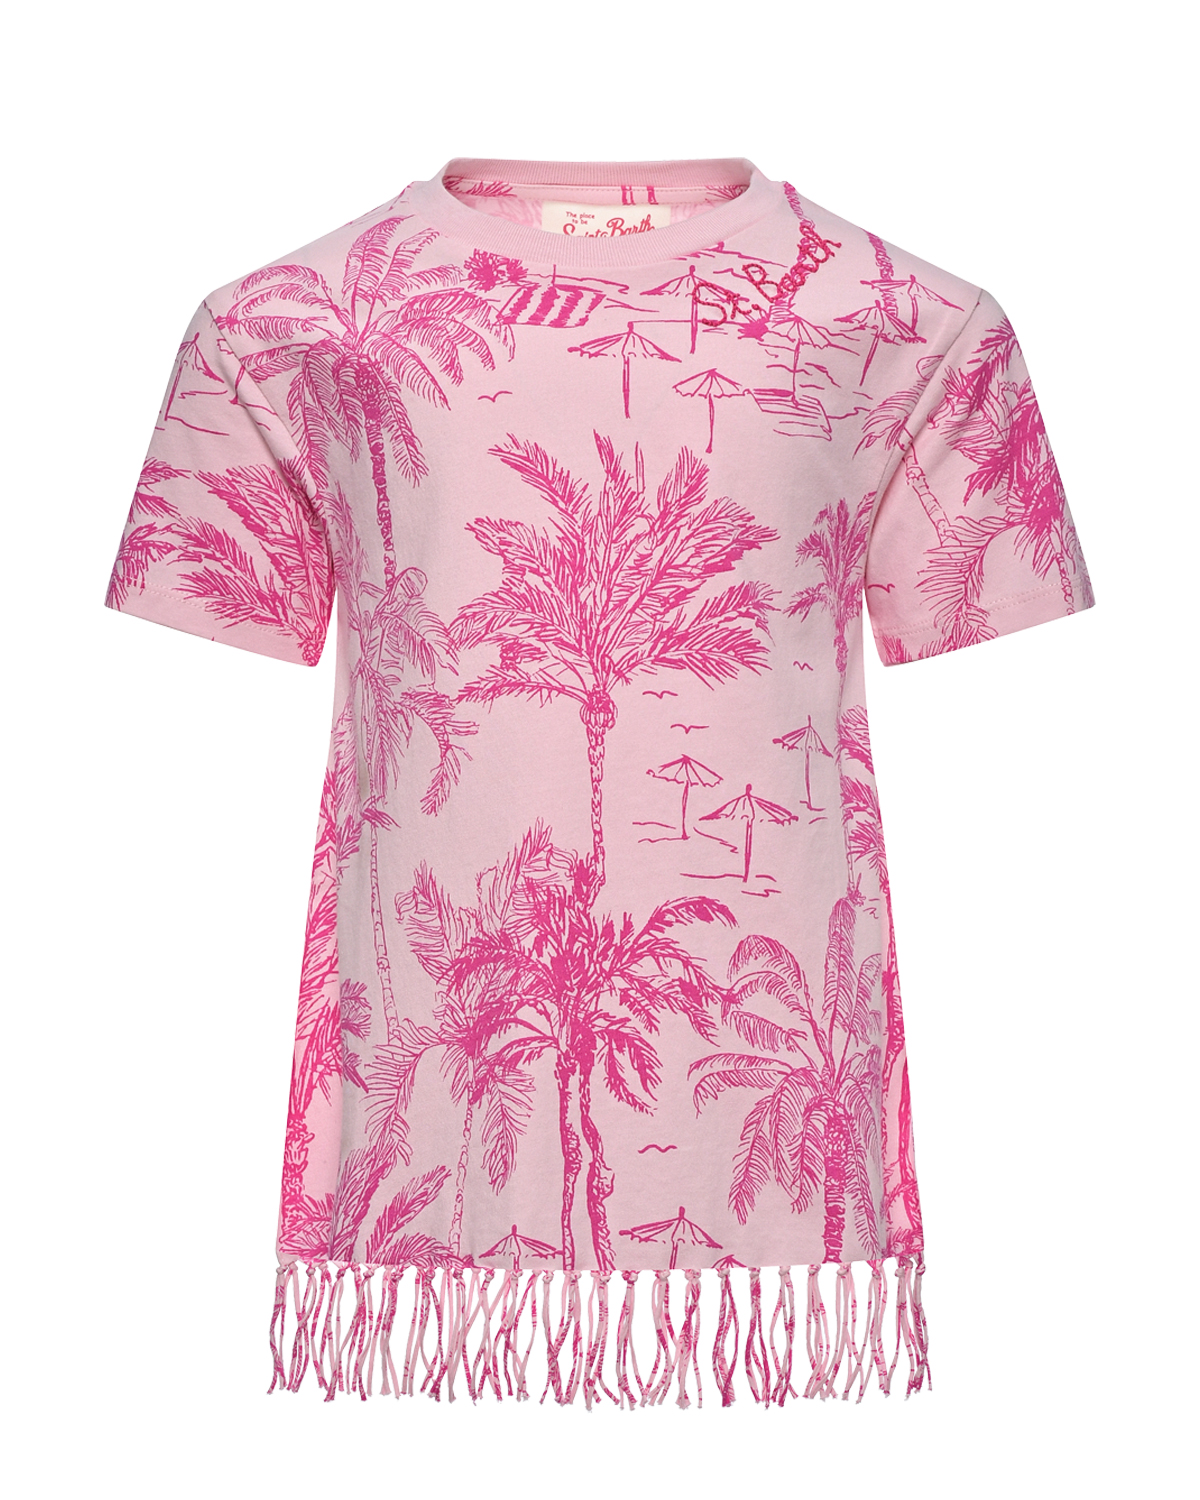 Платье - футболка с бахромой и принтом пальмы, розовое Saint Barth, размер 140, цвет нет цвета